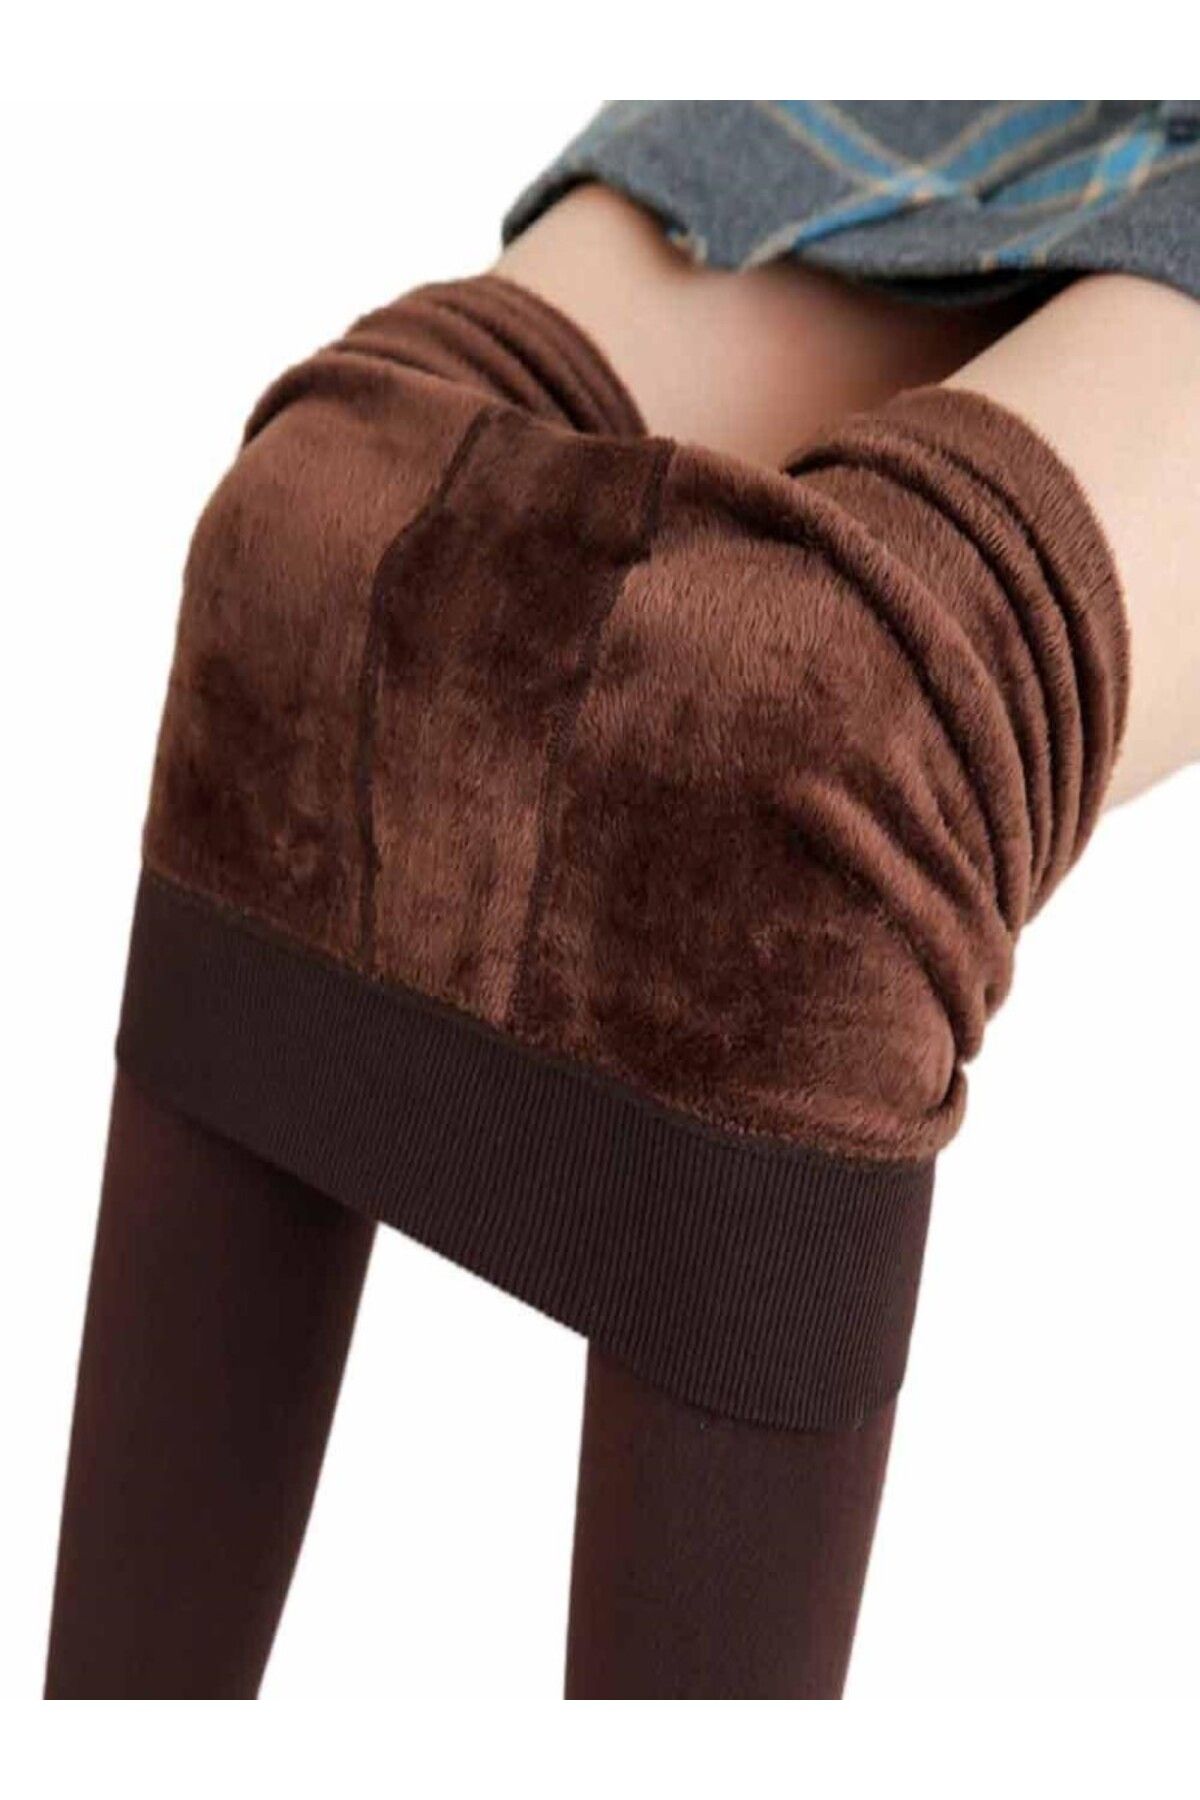 MİSTİRİK Ravena Model Sıcak Tutan Sıkılaştıran Tüylü Pelüşlü Dokuma Külotlu Çorap Kahve Renk